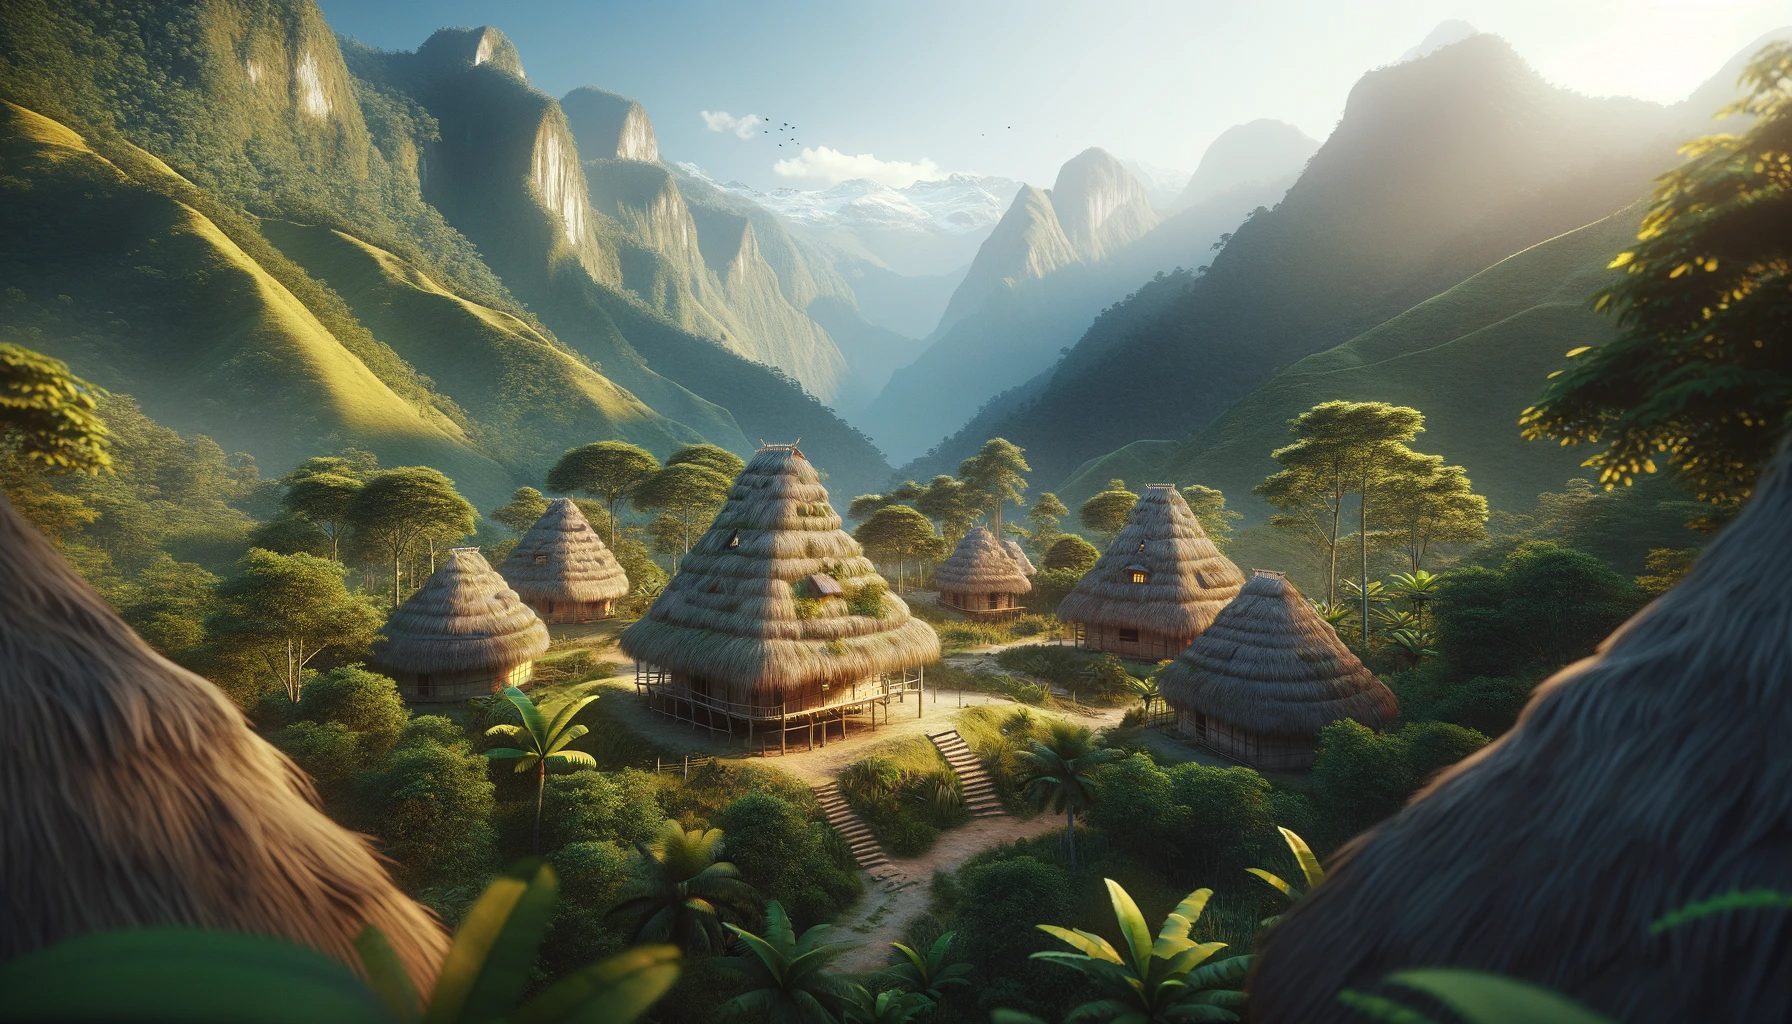 Des huttes au toit de chaume dans un paysage de vallée montagneuse luxuriante.